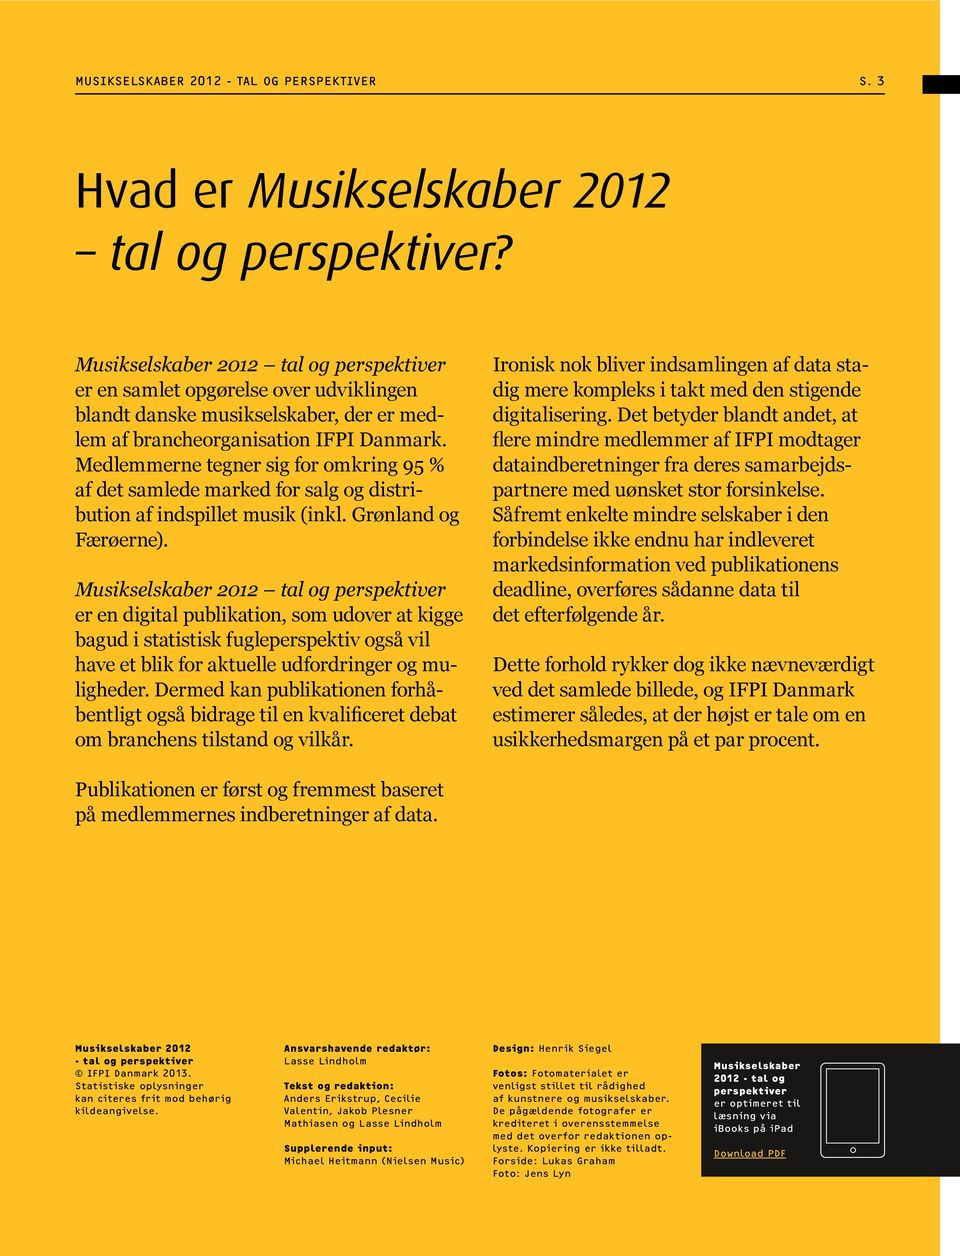 Medlemmerne tegner sig for omkring 95 % af det samlede marked for salg og distribution af indspillet musik (inkl. Grønland og Færøerne).